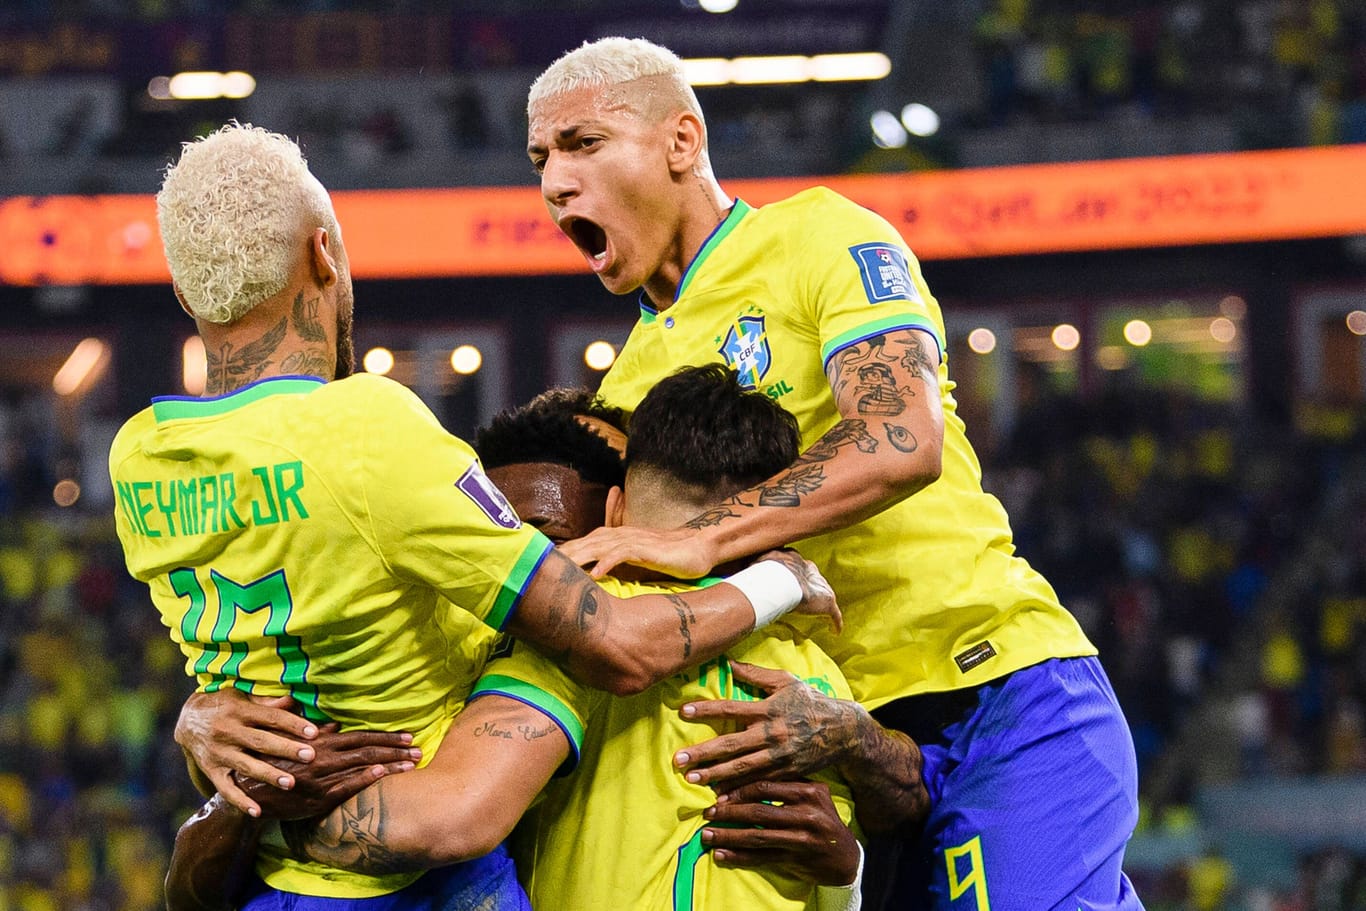 Brasiliens Spieler jubeln: Sie wollen den sechsten WM-Titel ihres Landes holen.